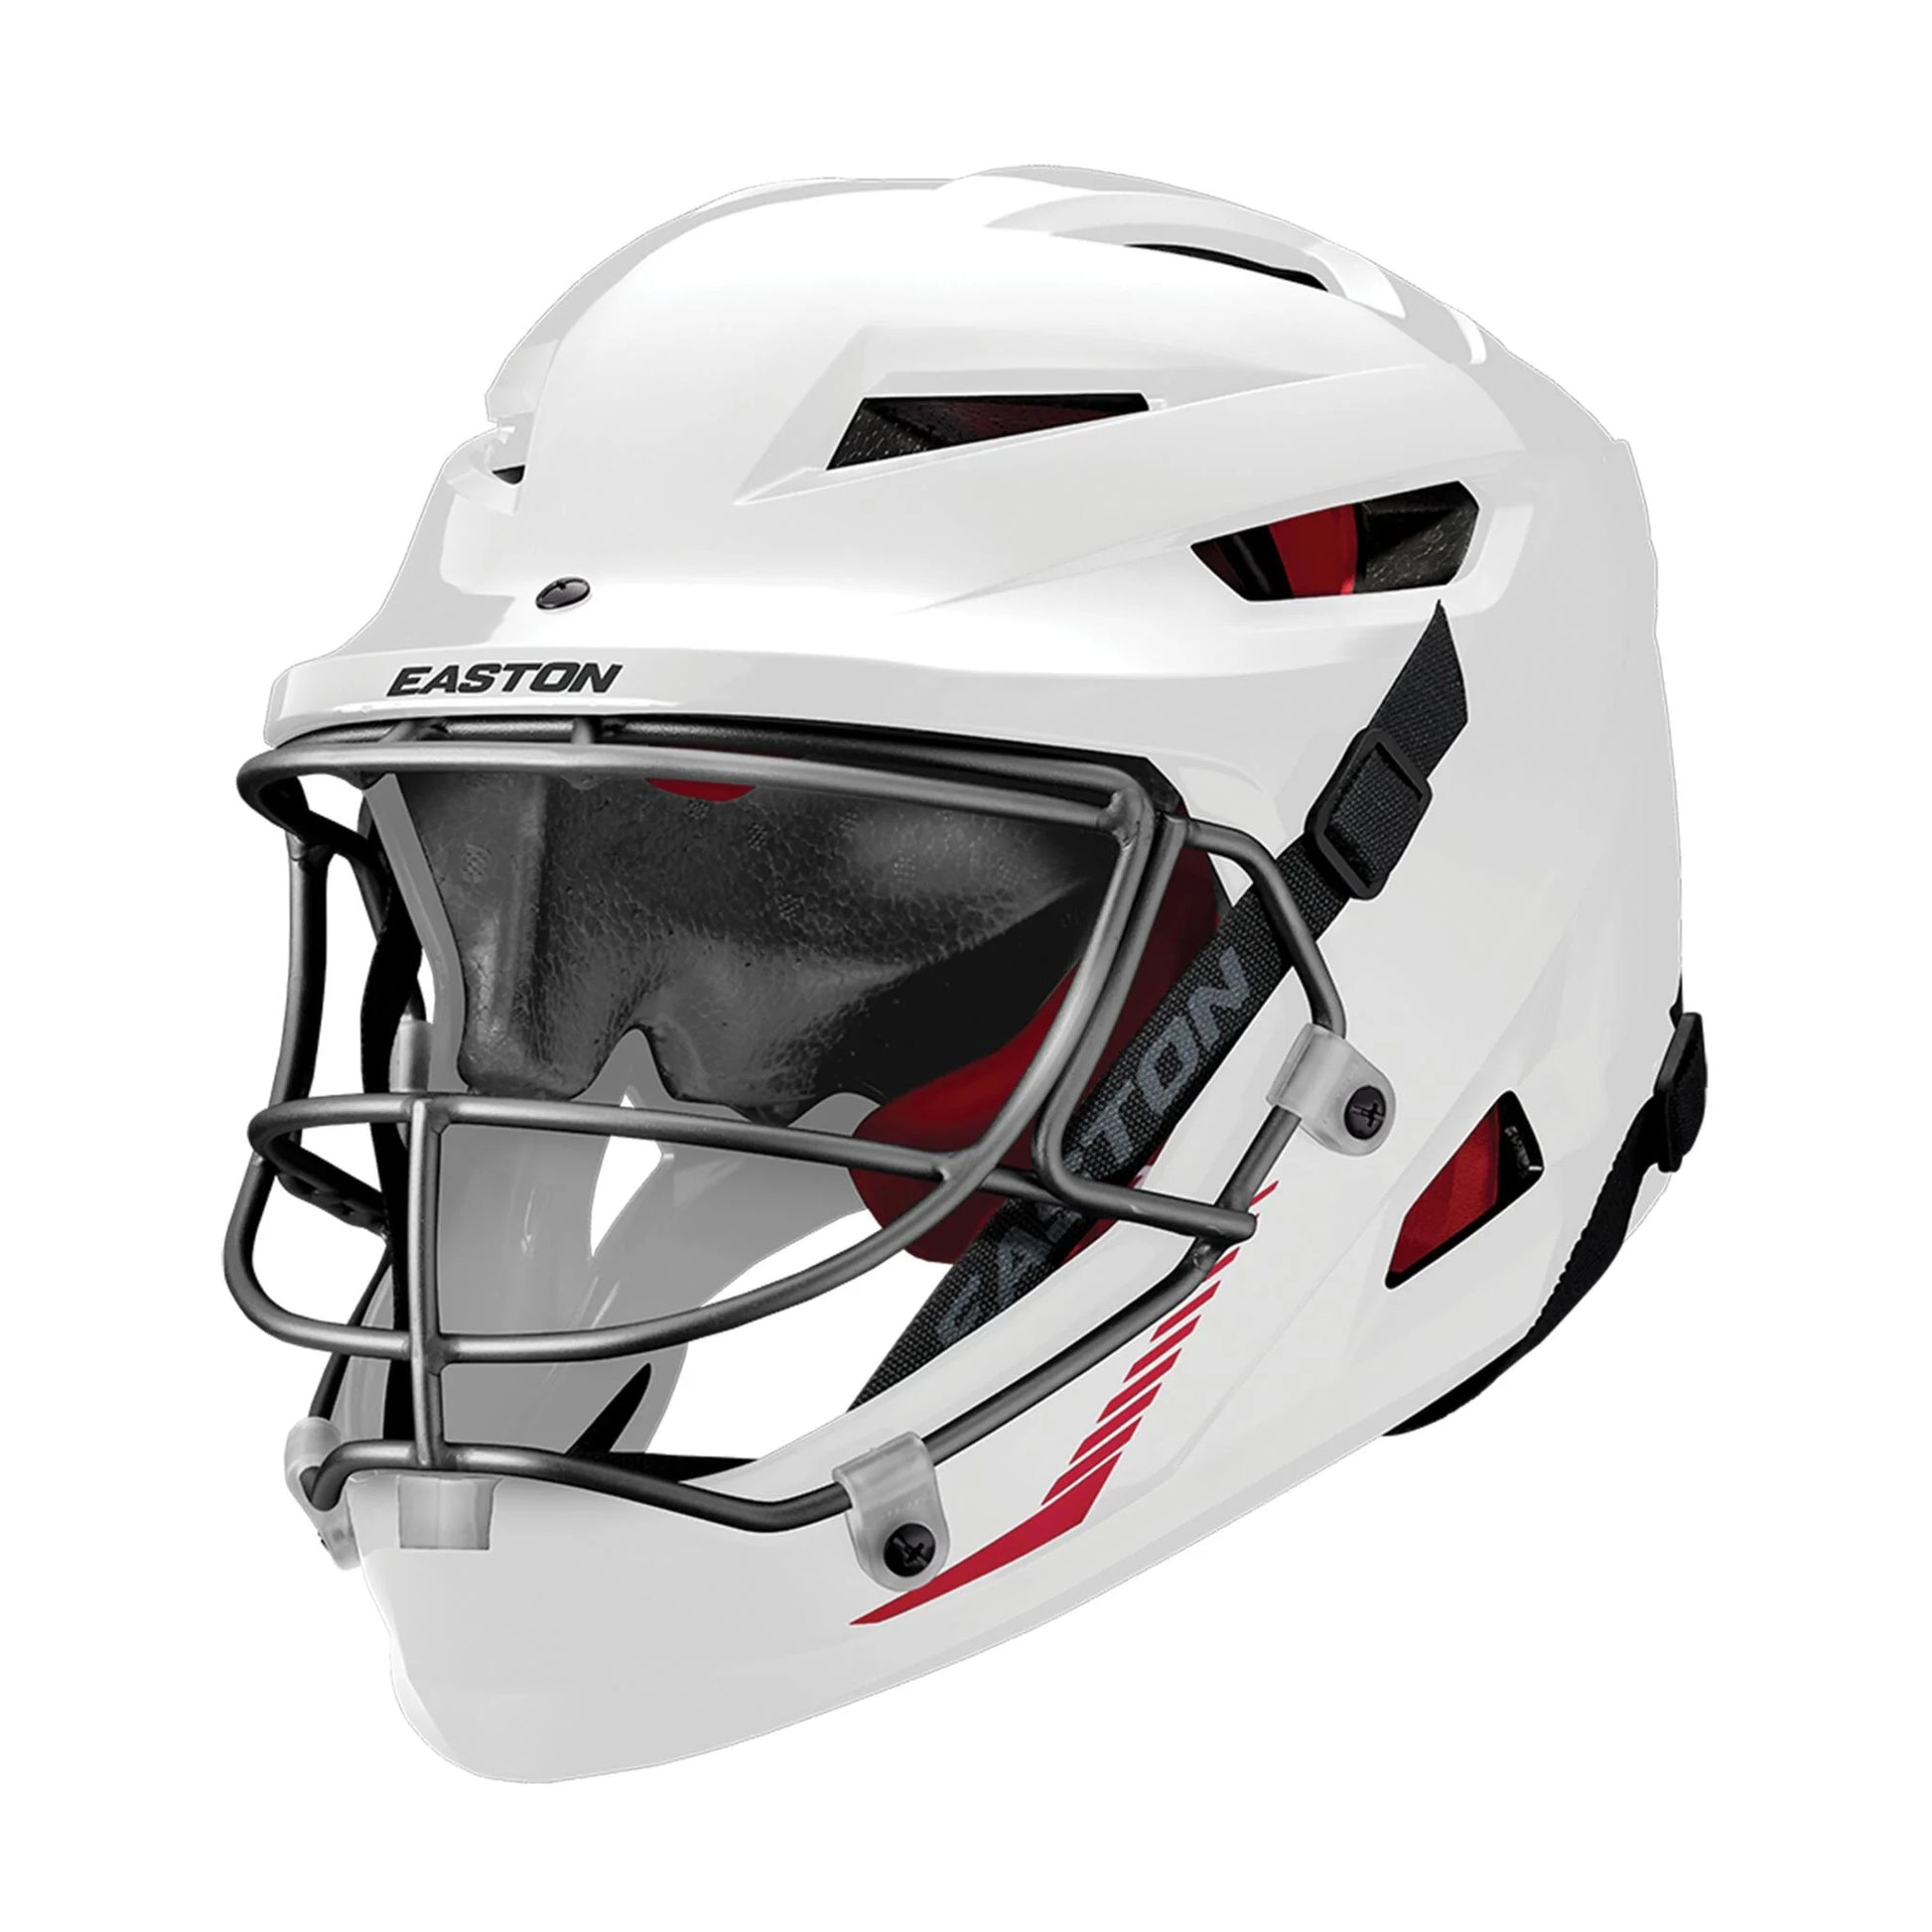 Easton Hellcat Softball Helmet White